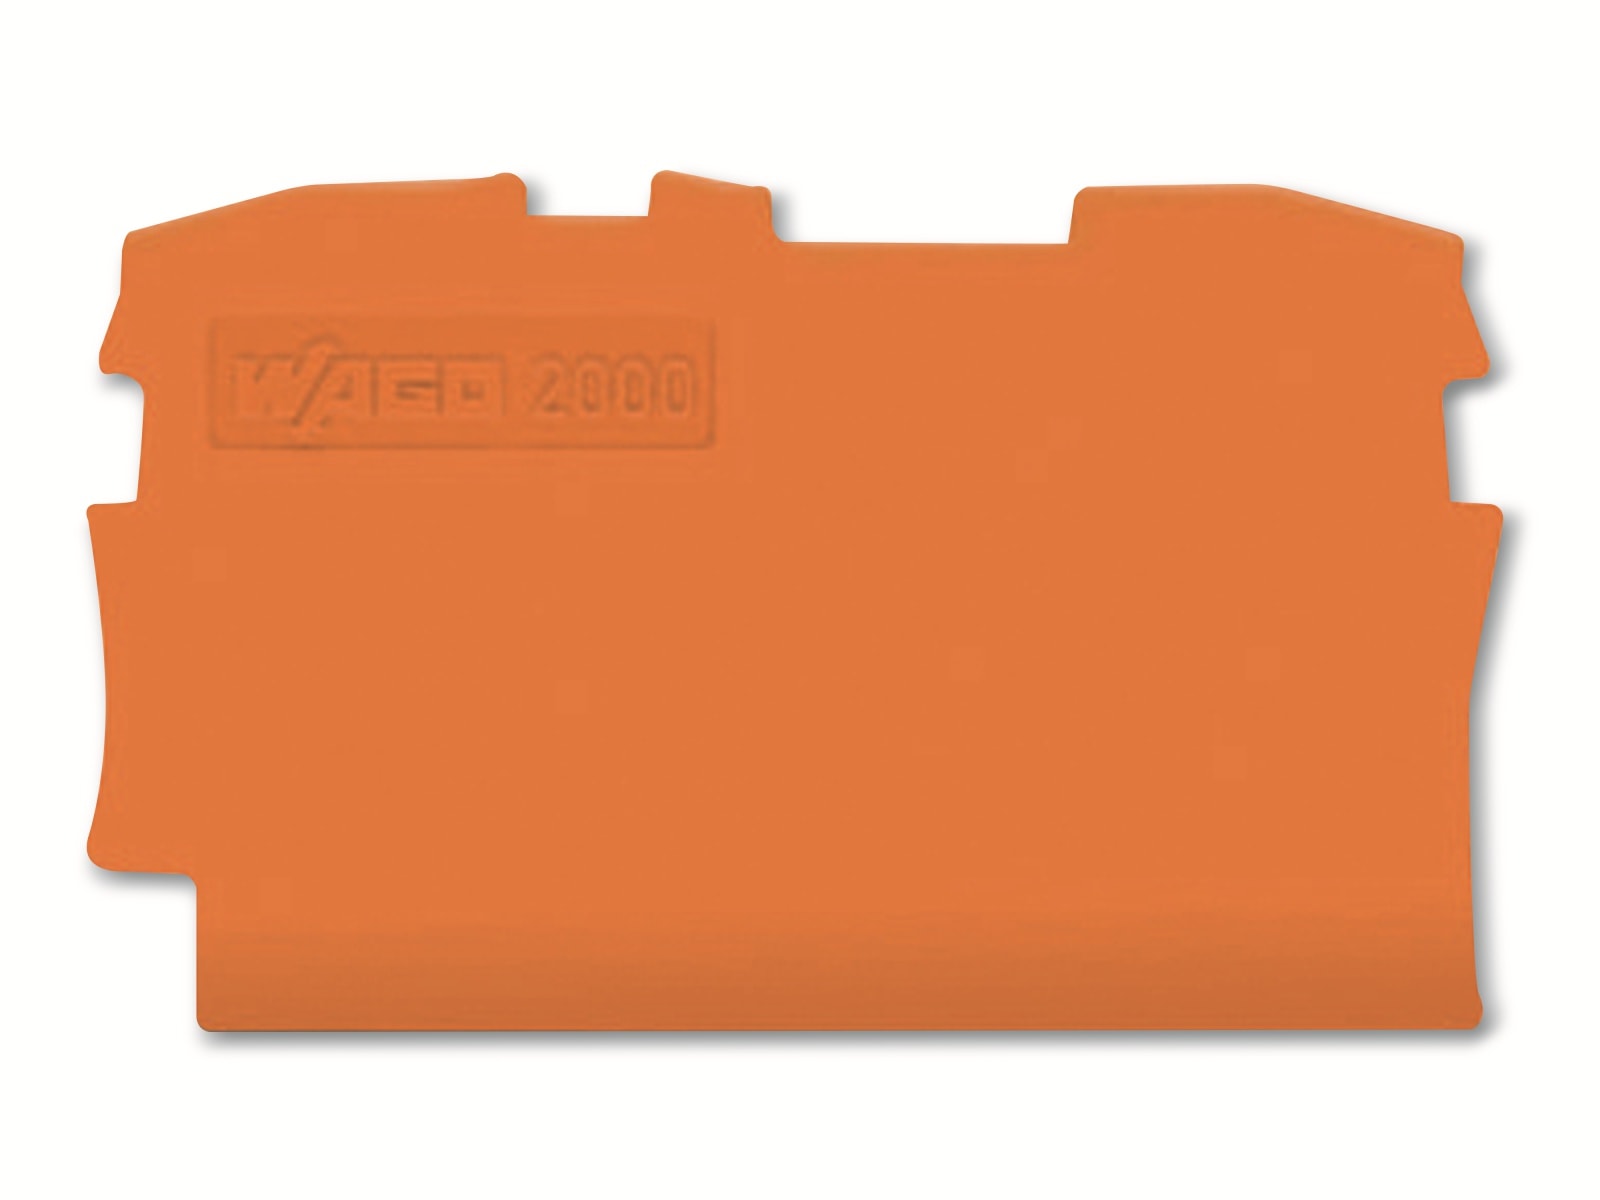 WAGO Abschluss- und Zwischenplatte, 2000-1292, orange